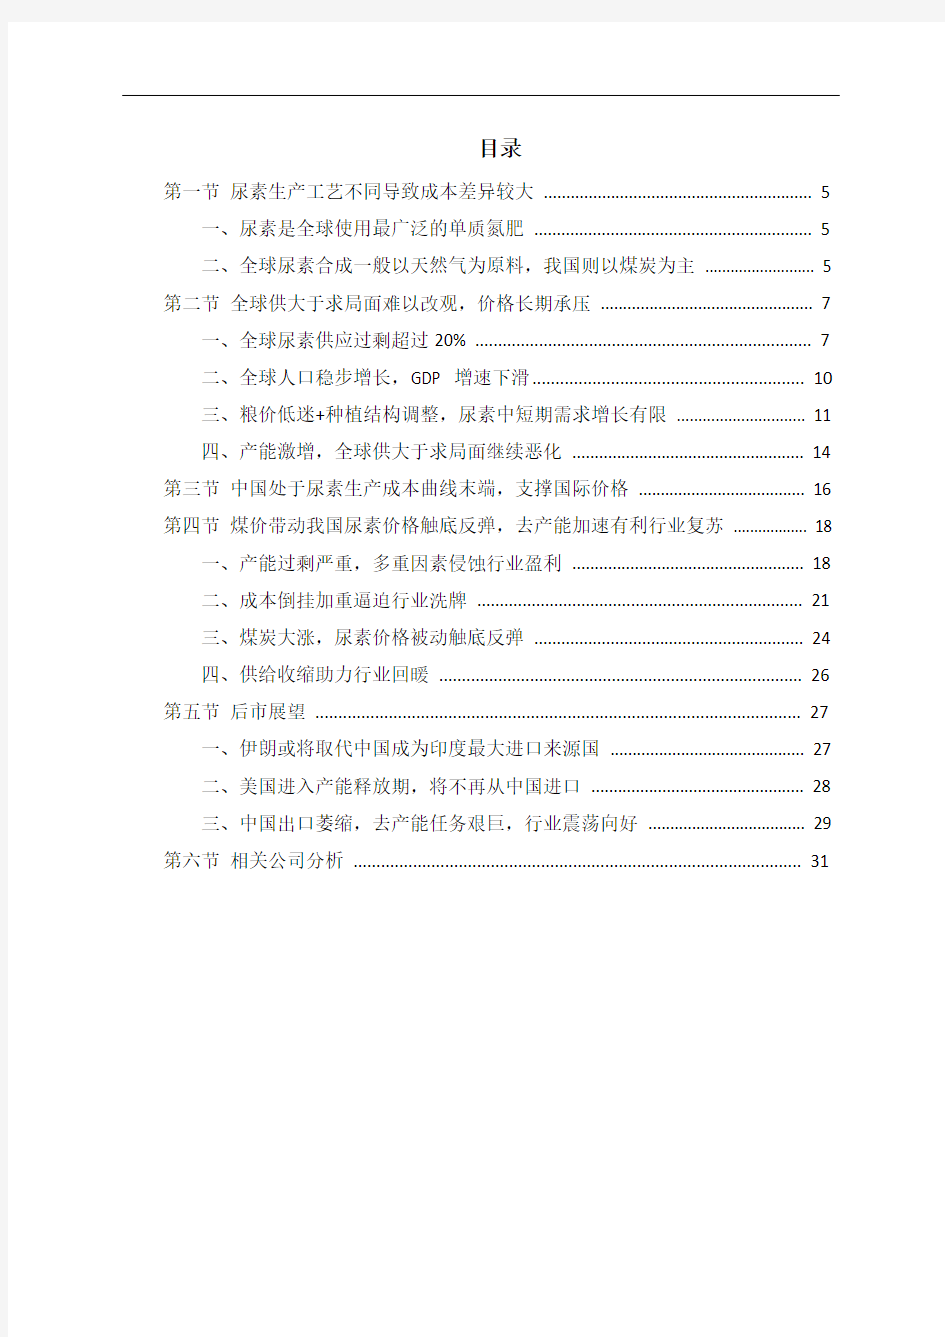 中国尿素市场投资策略分析报告